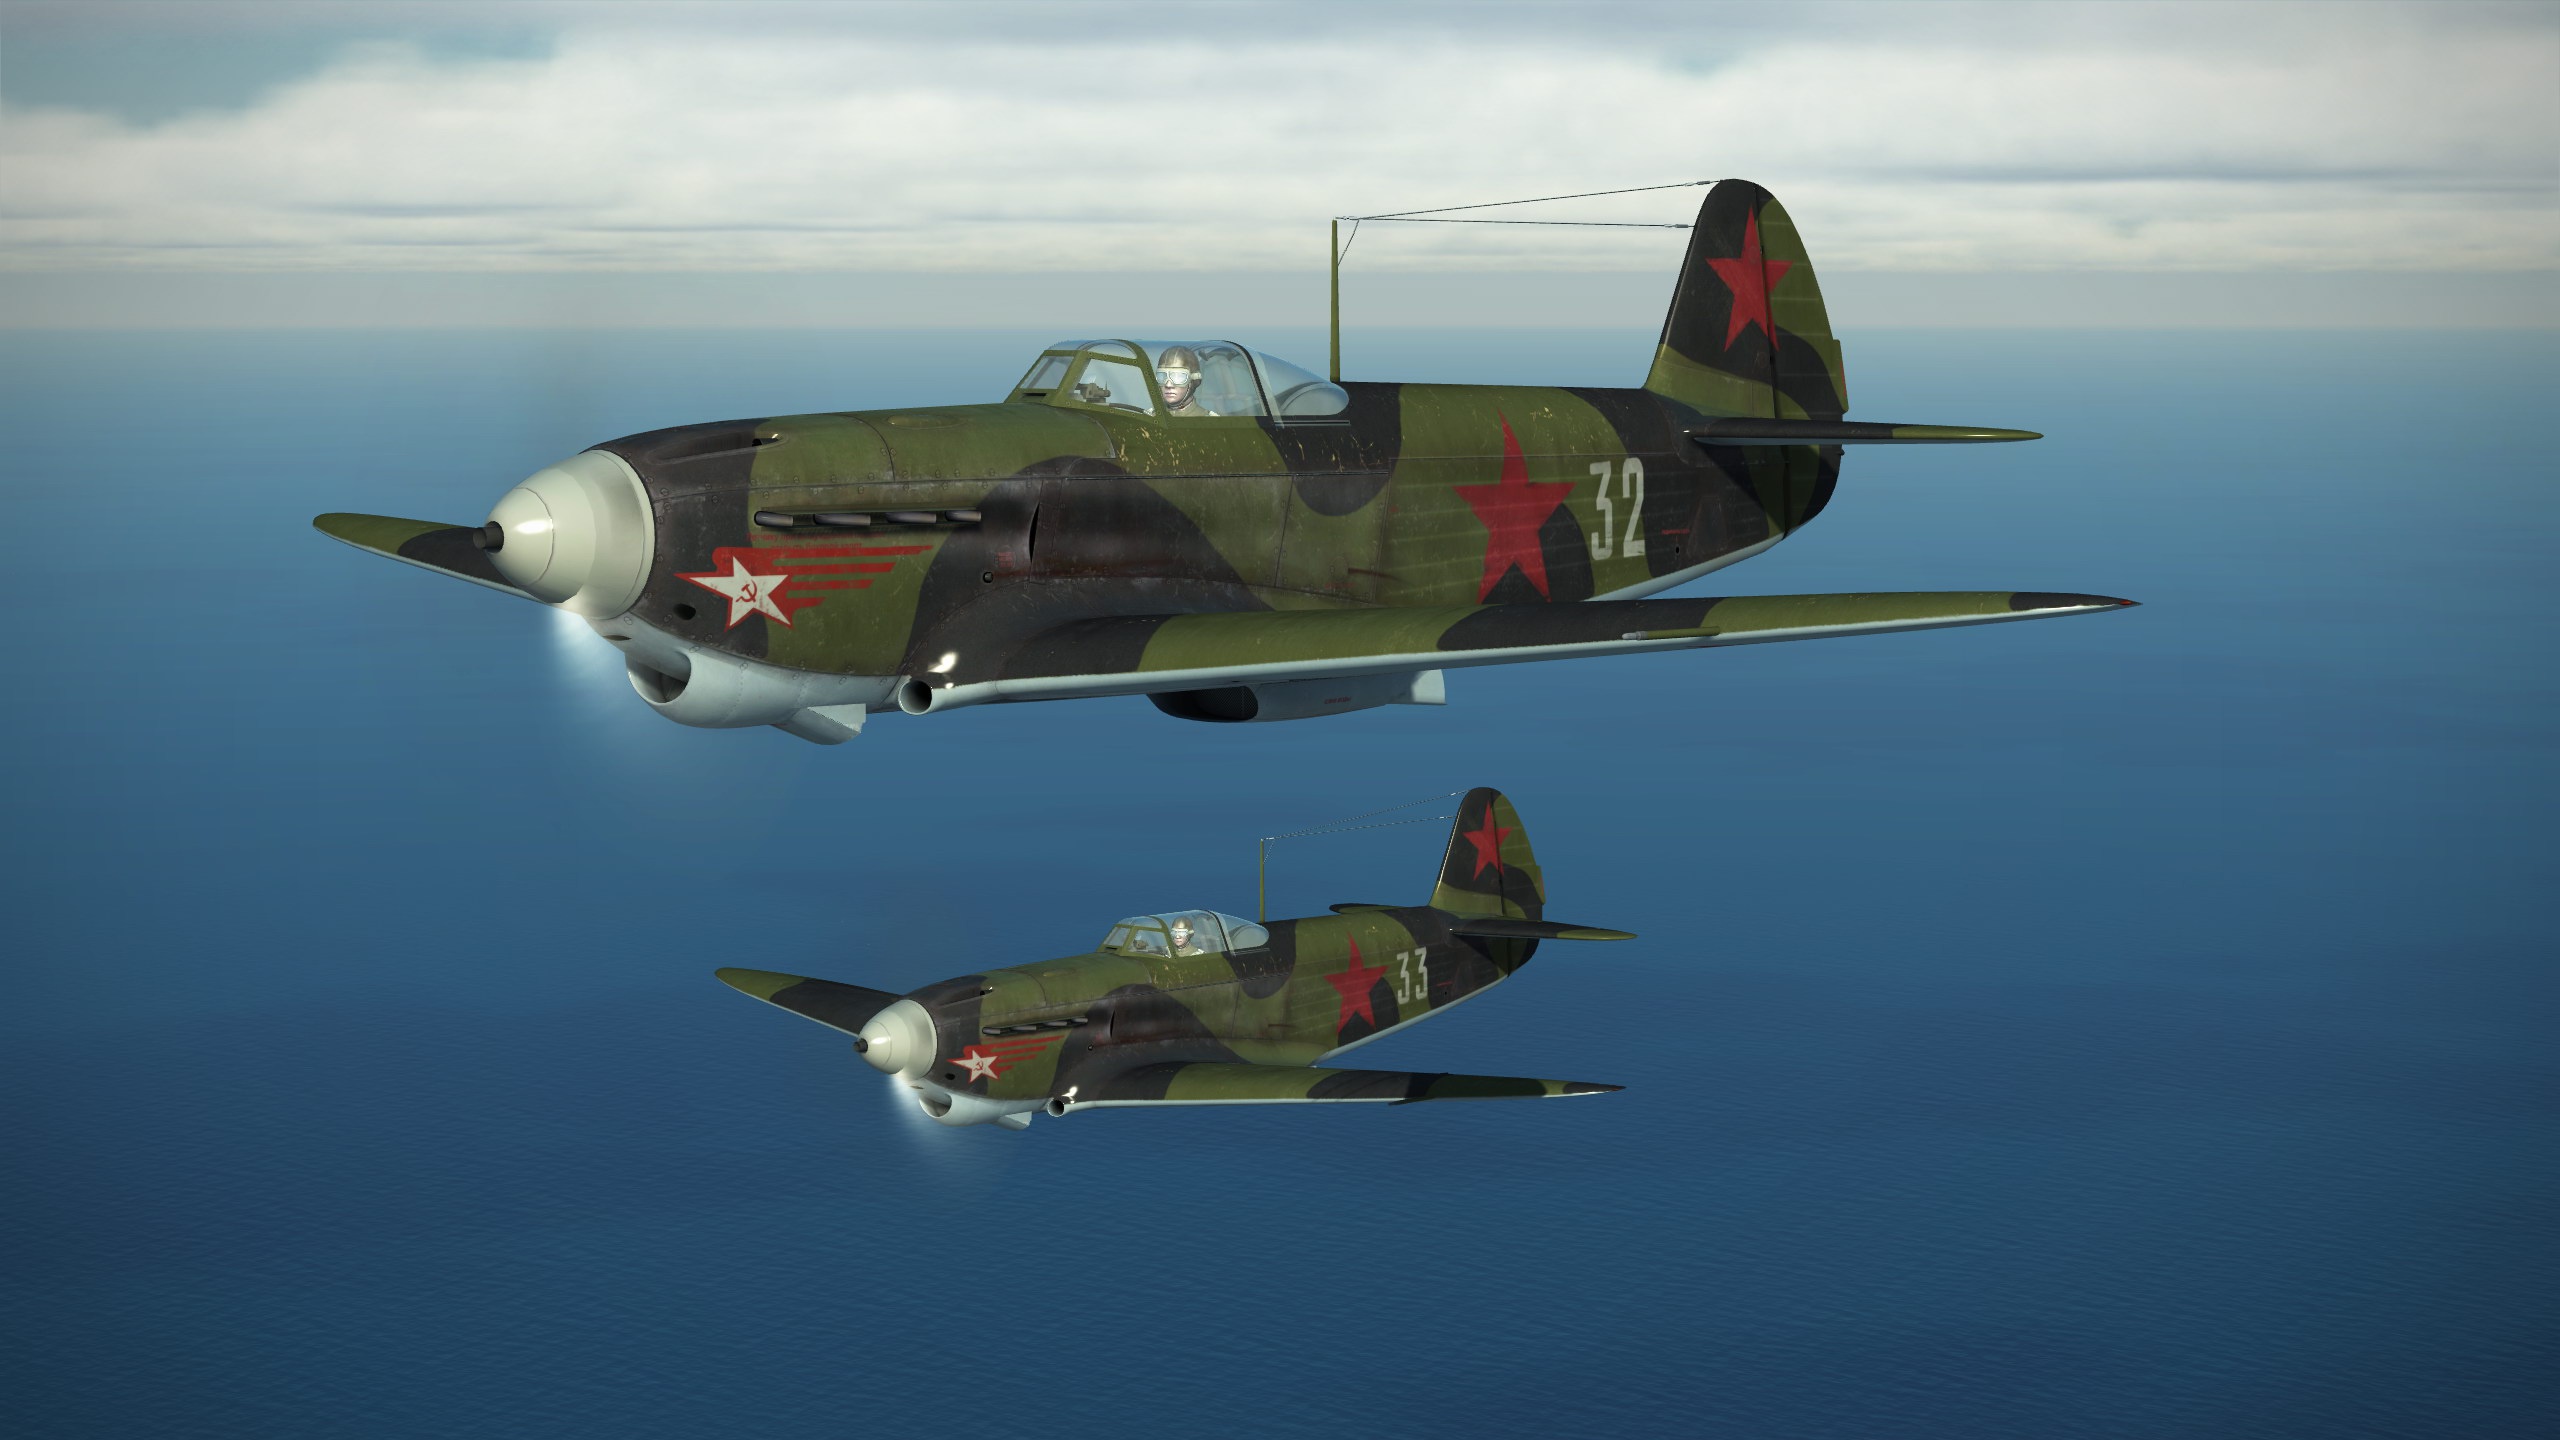 Як-1Б, 1943 год. Данные варианты текстур, воссоздающие исторические окраски самолётов, выполнены Максимом Брянским.